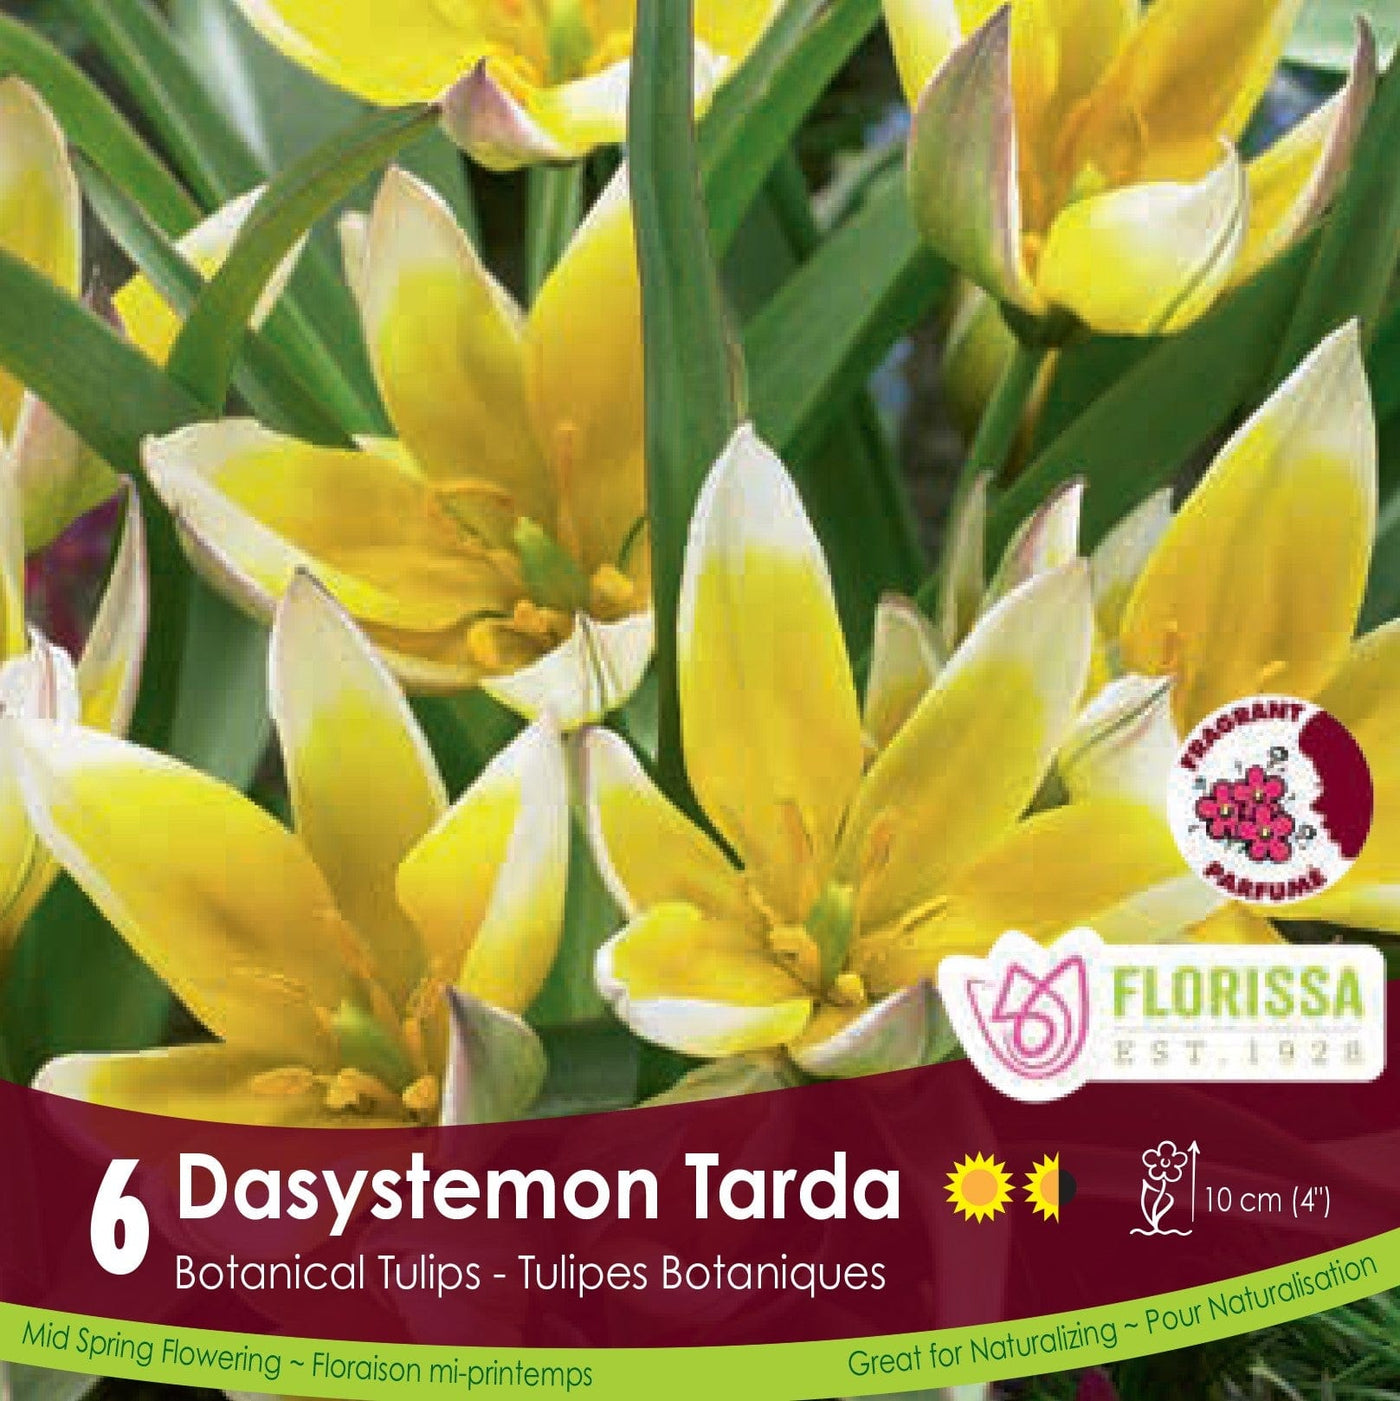 Dasystemon Tarda white and yellow botanical tulip